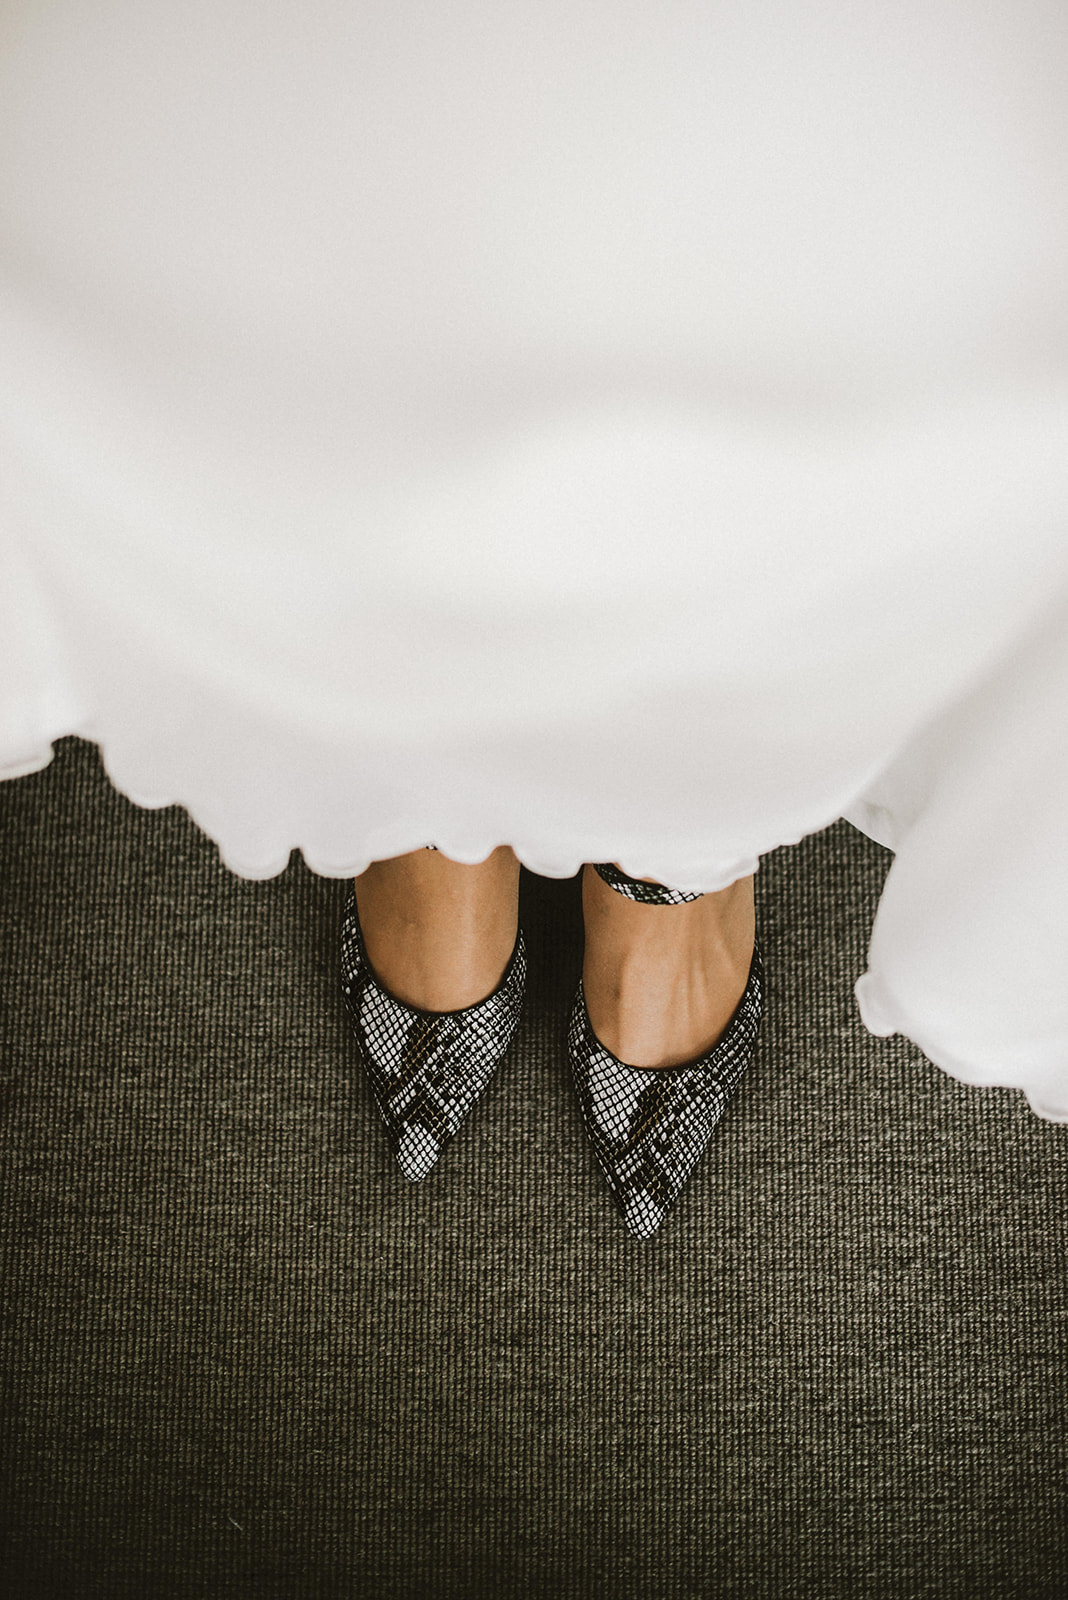 zapatos de la novia en detalle